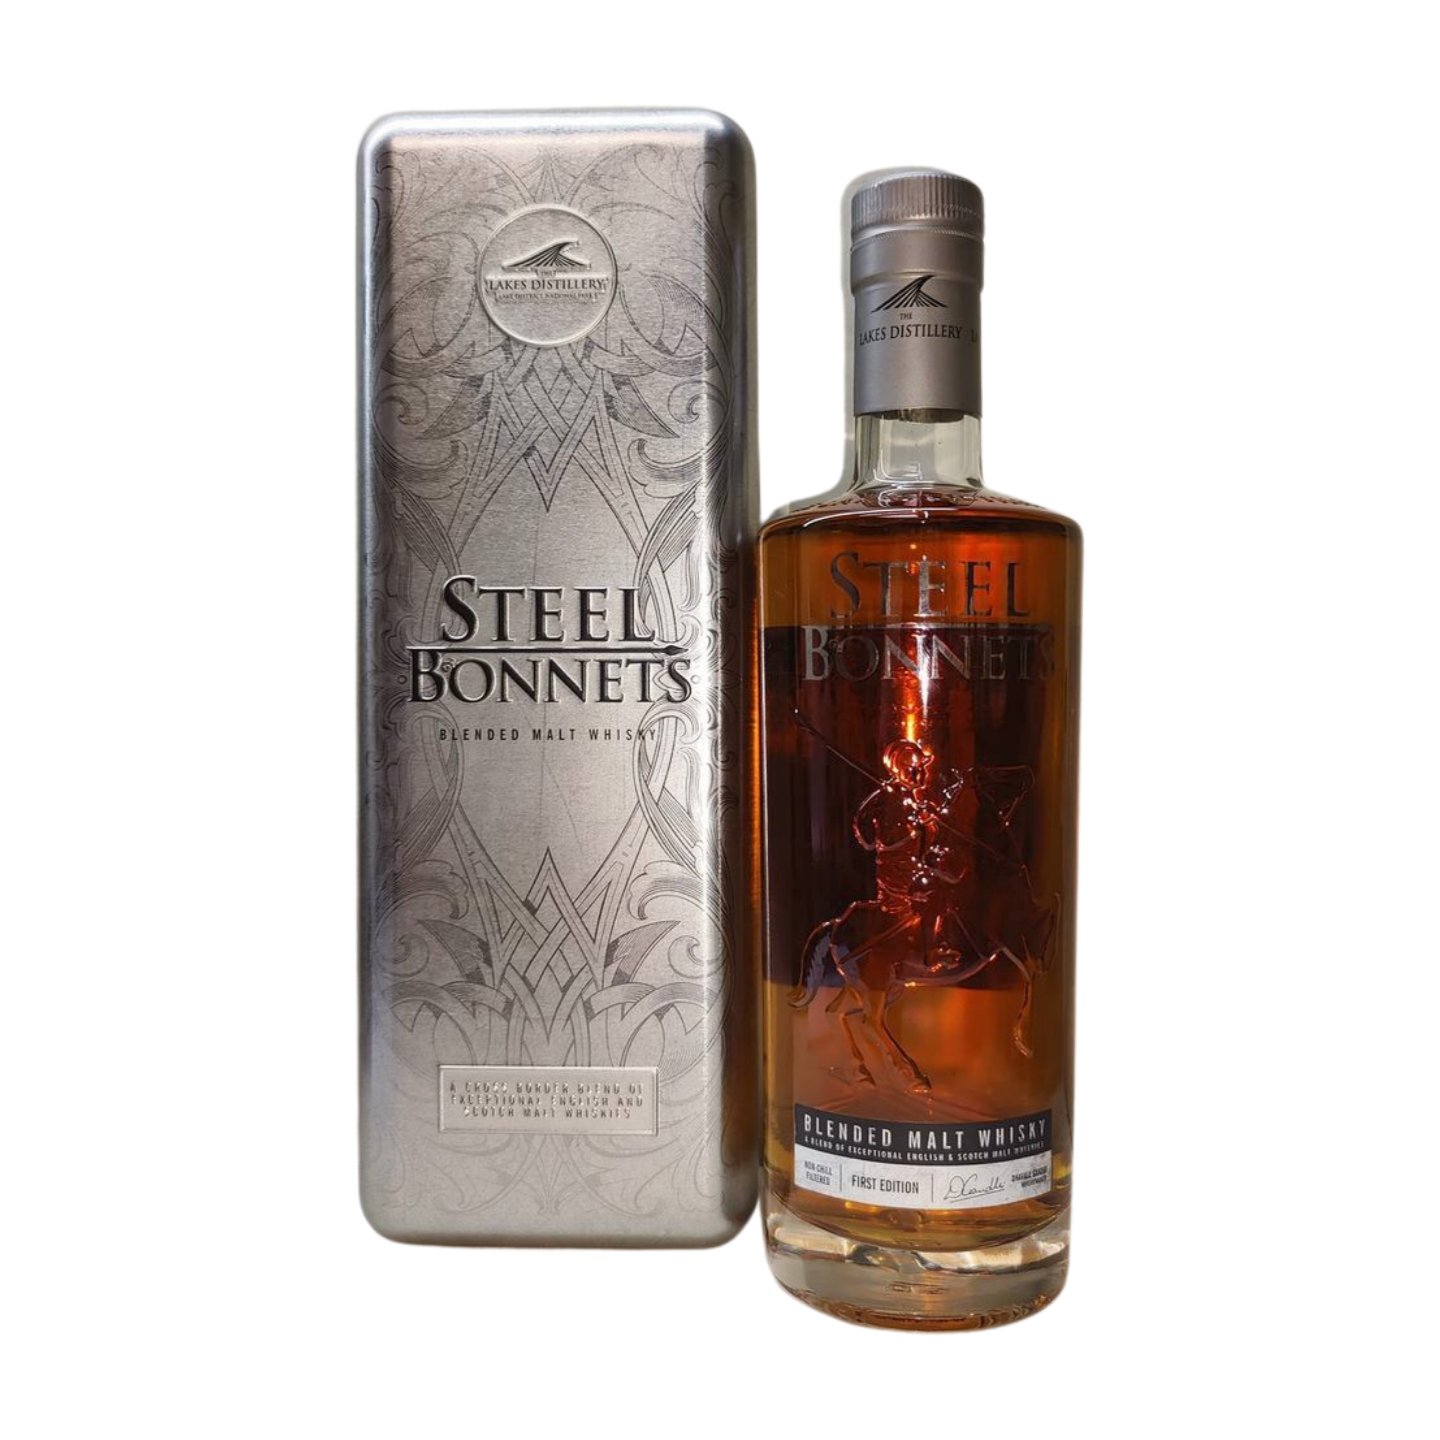 Steel Bonnets (The Lakes Distillery) Blended Malt Whisky 1st Edition 46.6% 700ml